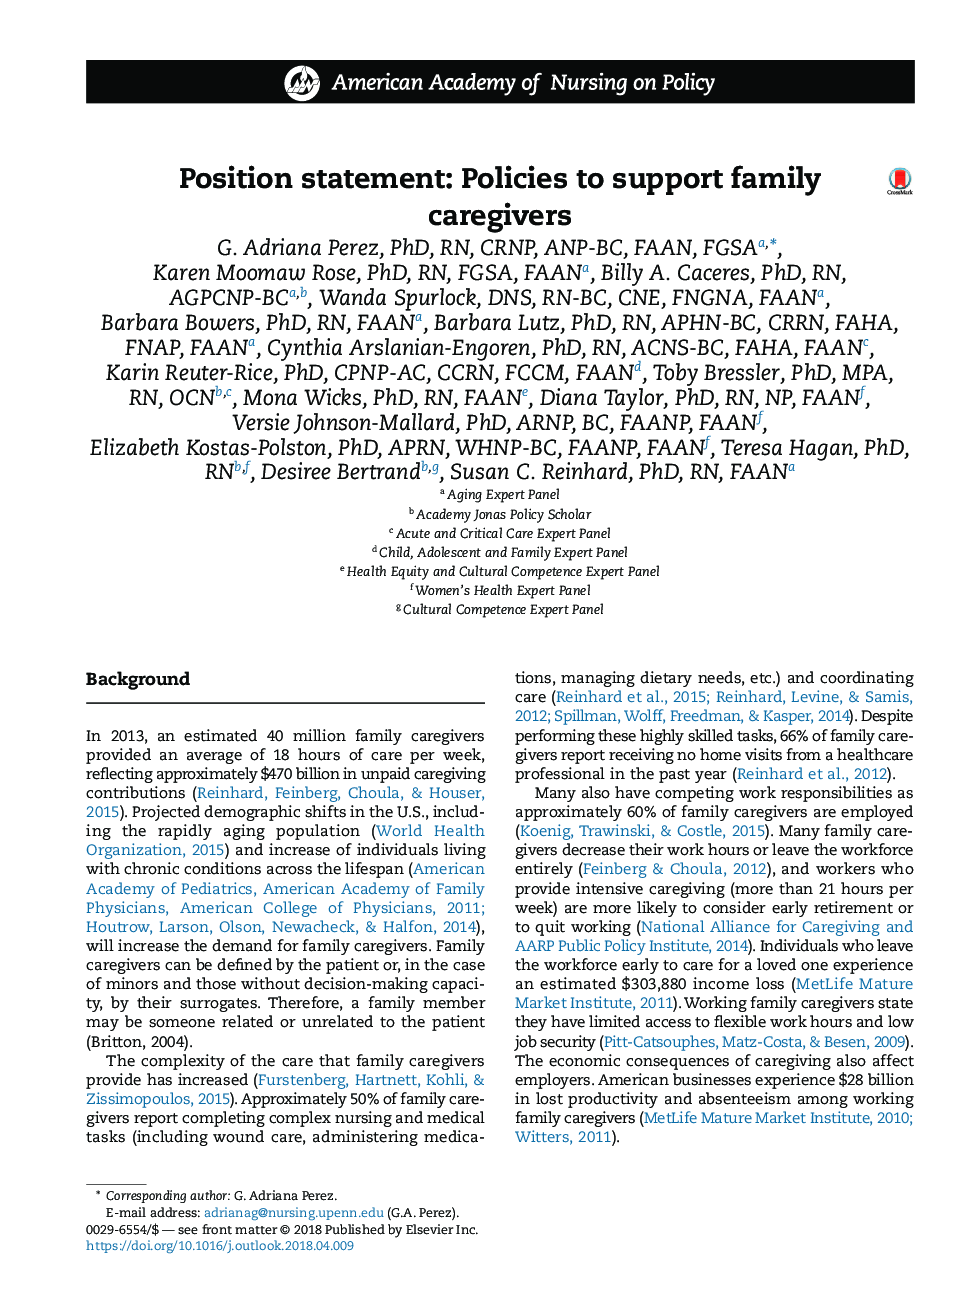 بیانیه موضعی: سیاست های حمایت از مراقبان خانواده 